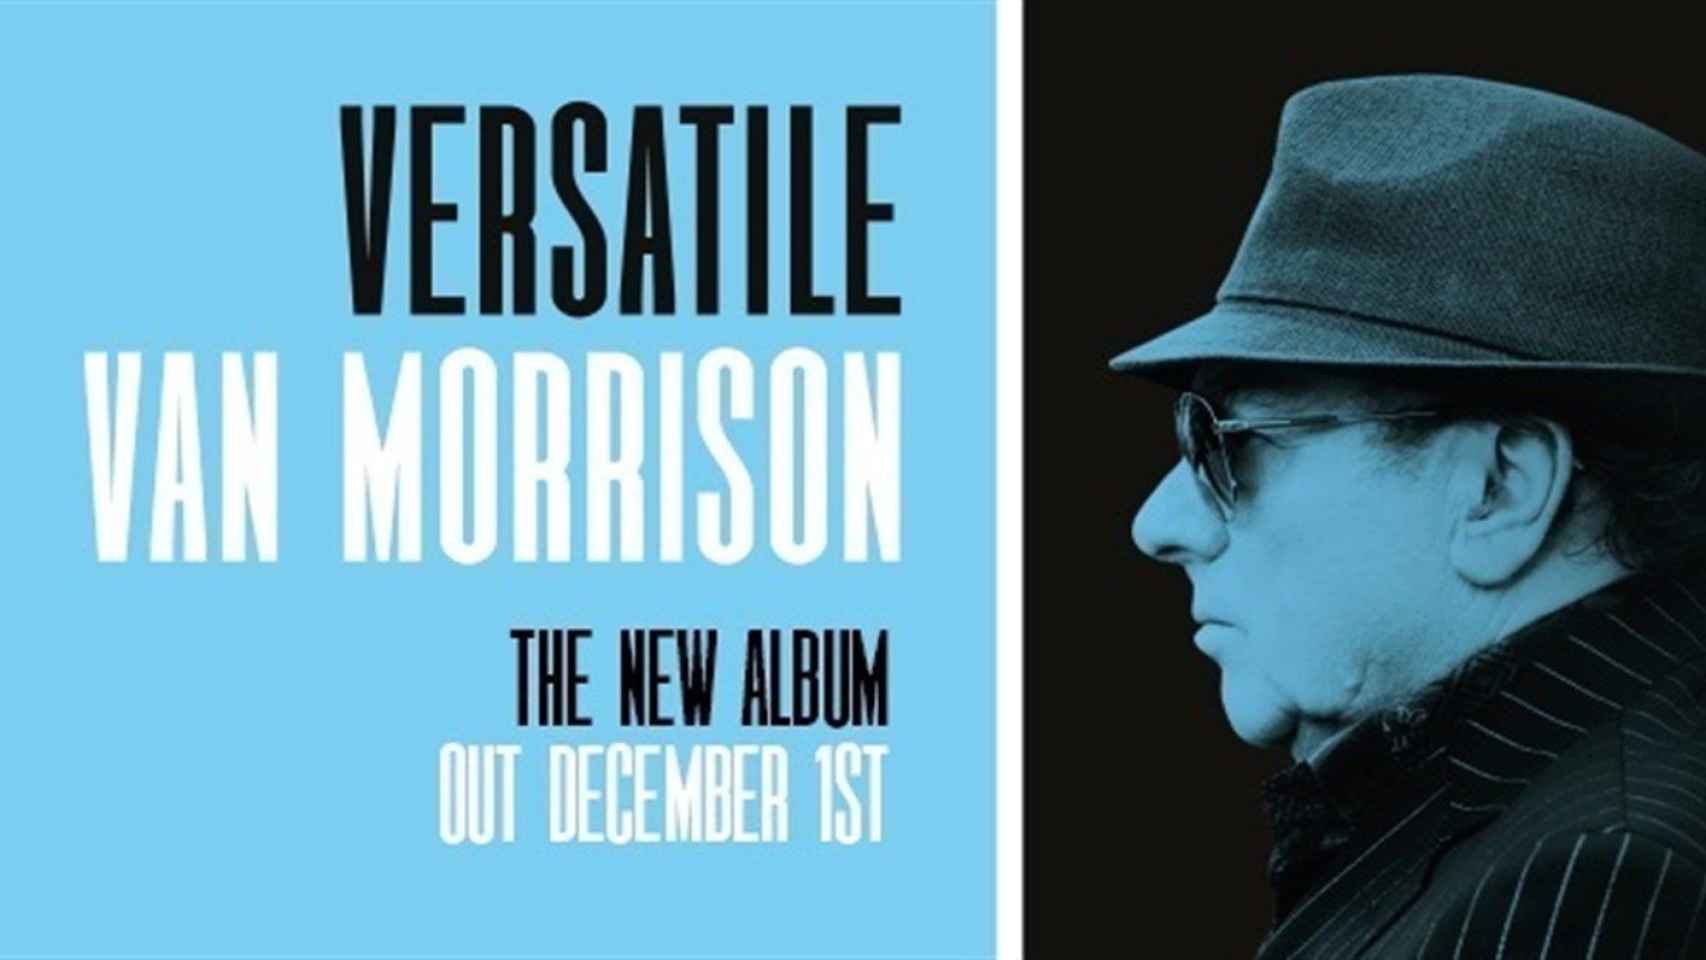 El nuevo disco de Van Morrison, 'Versatile' / EP